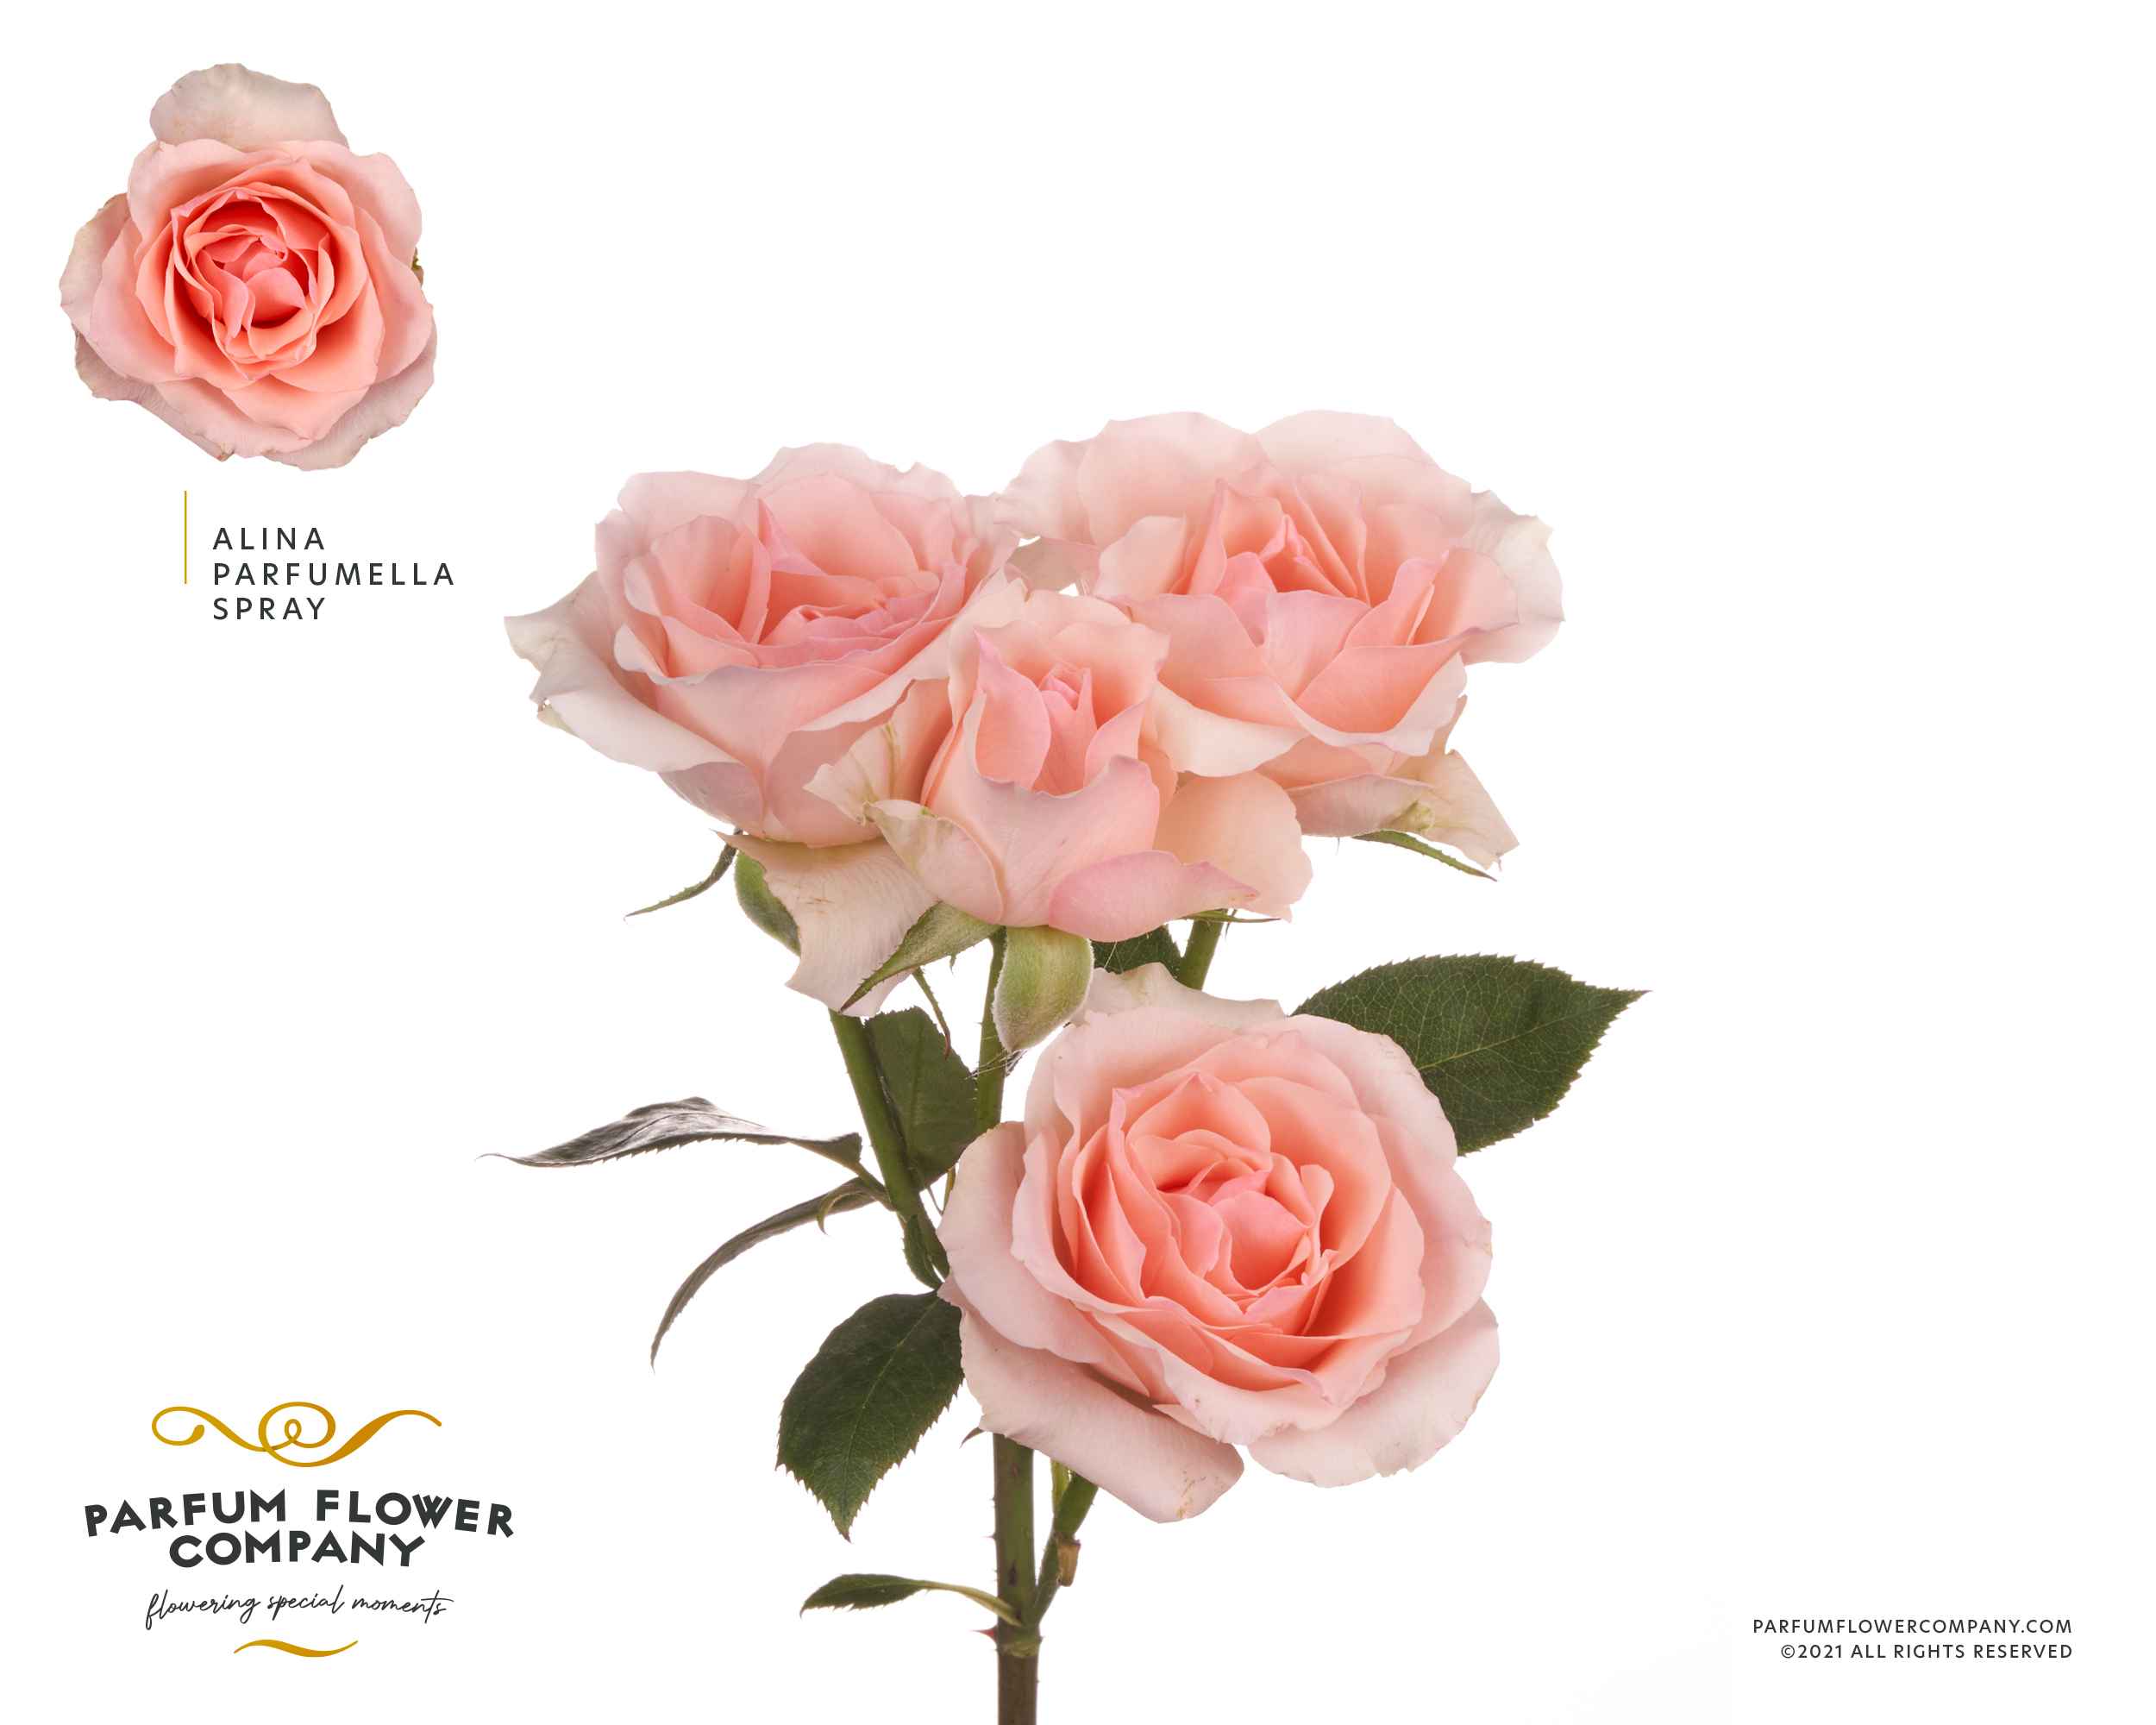 Срезанные цветы оптом Rosa sp garden meiland alina perfumella от 24шт из Голландии с доставкой по России